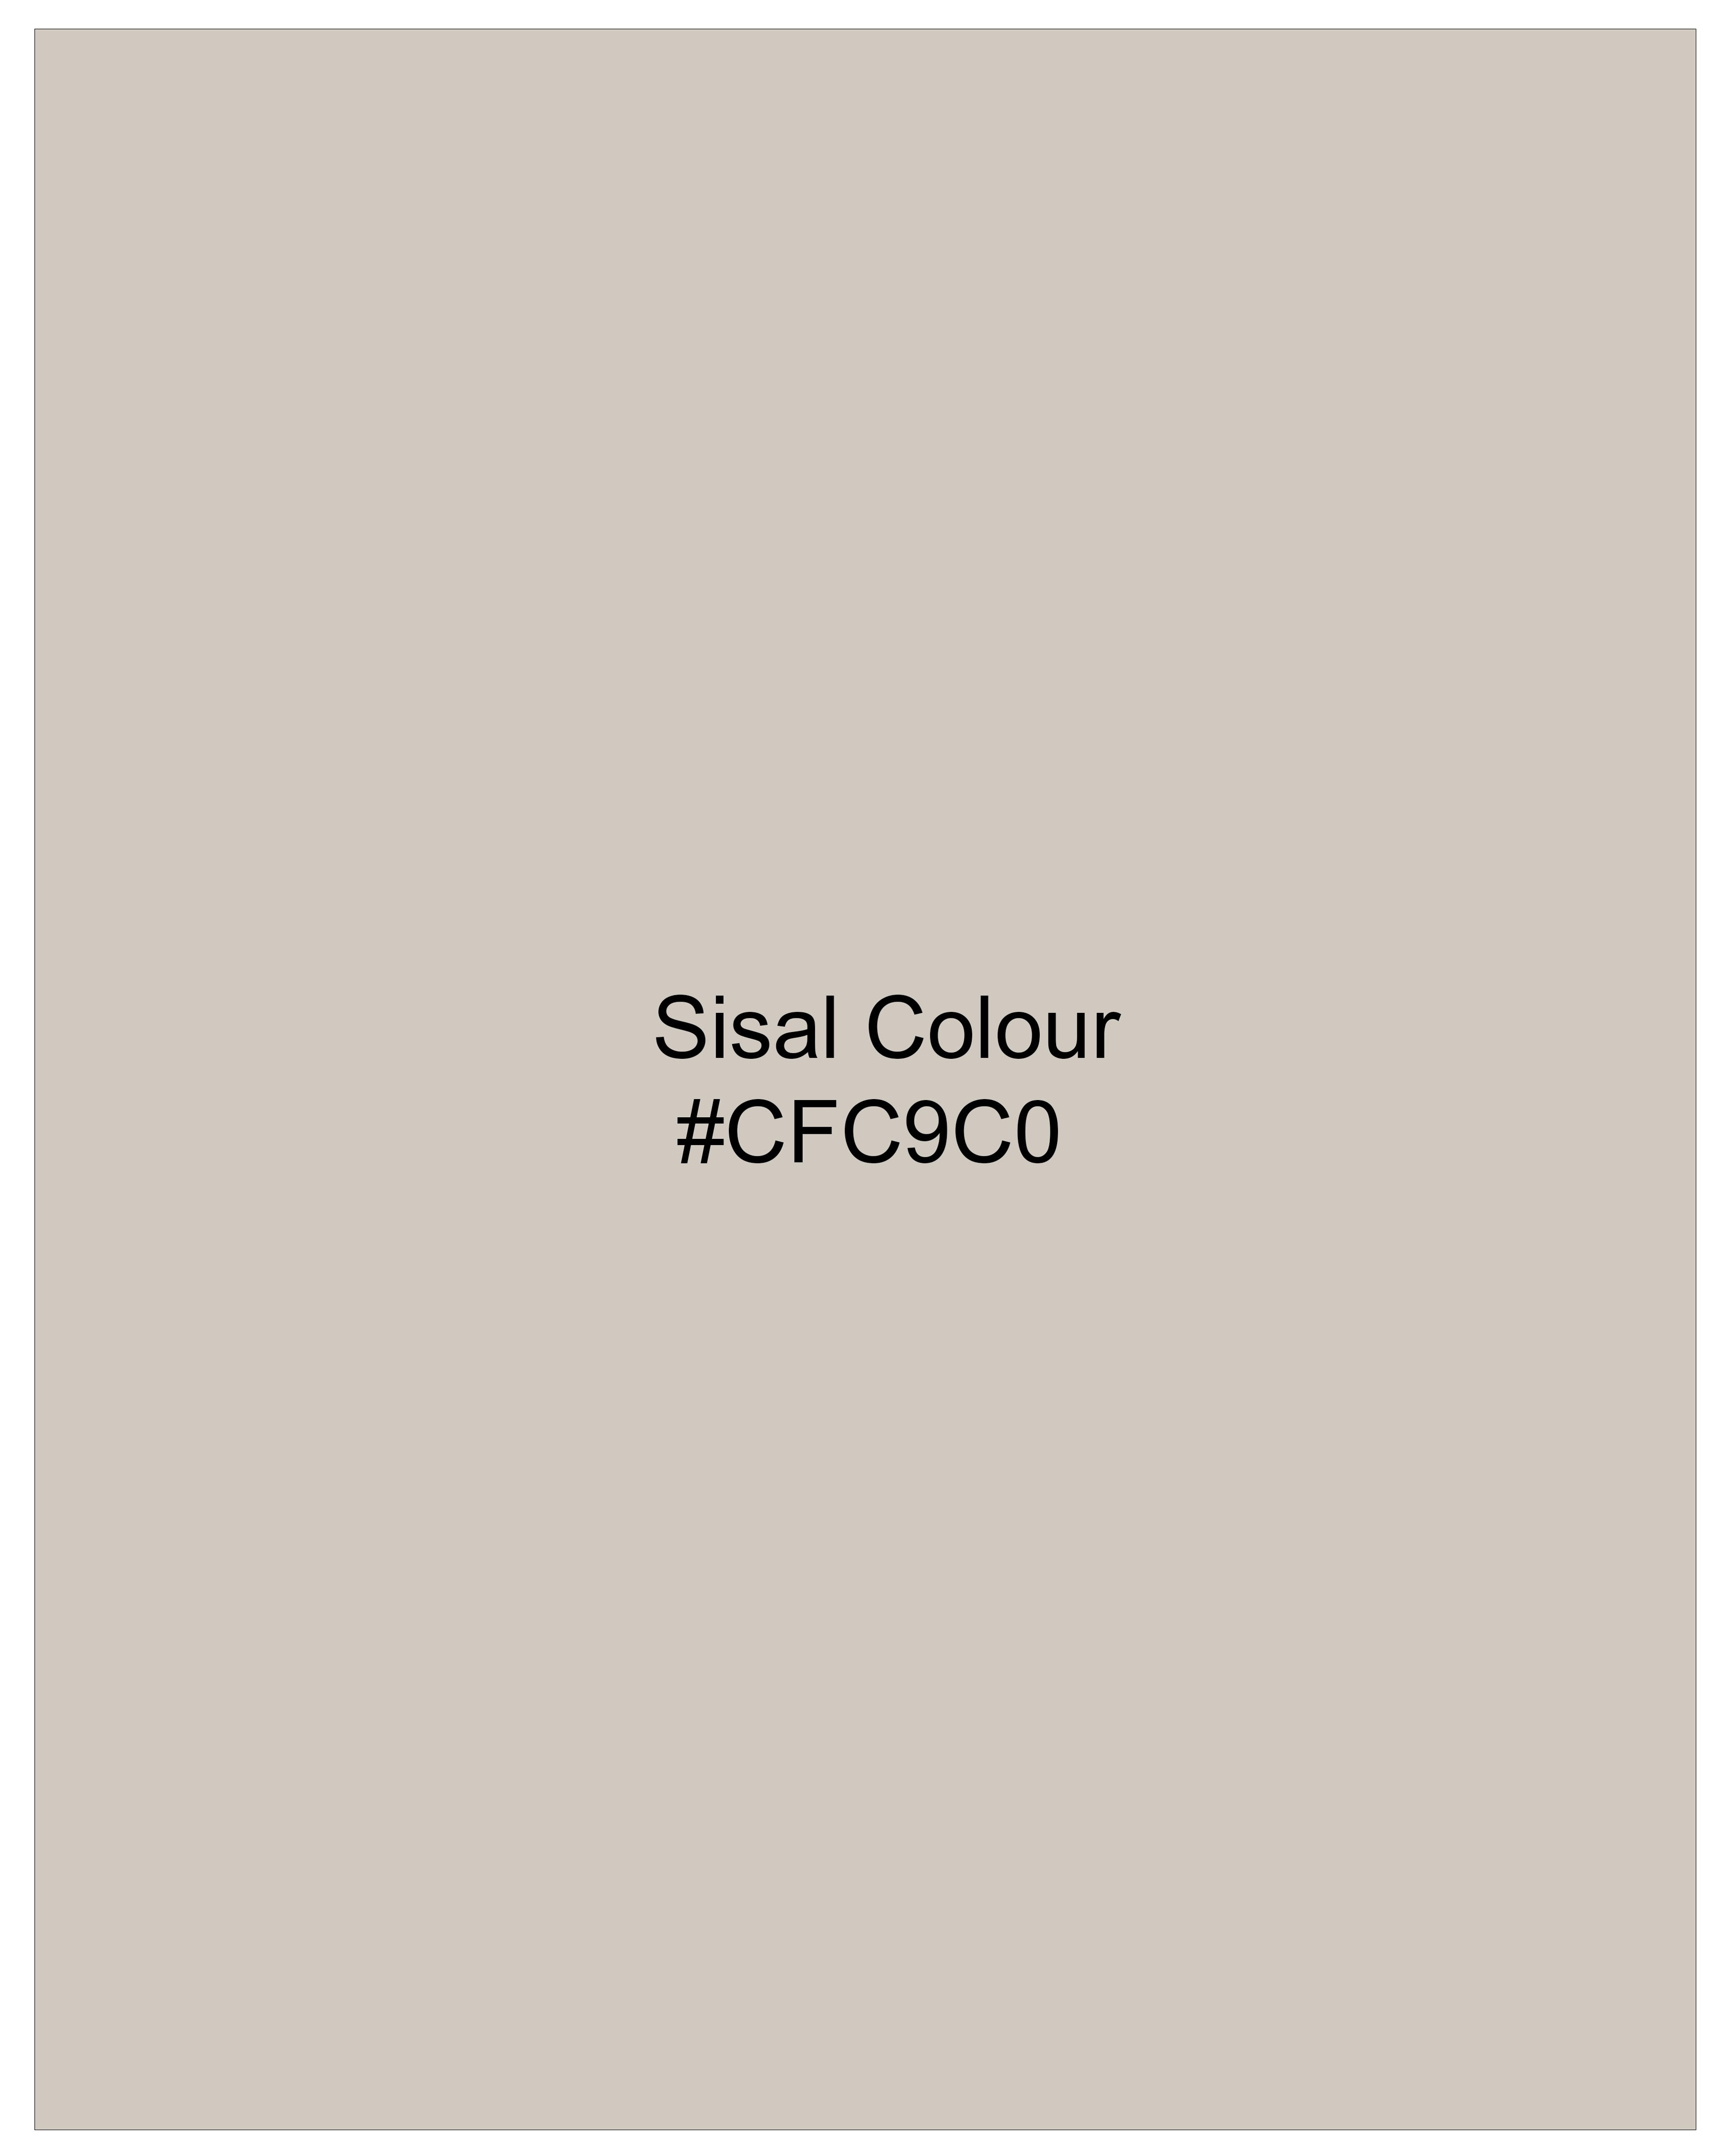 Sisal Light Gray Stretchable Premium Cotton traveler Pant T2677-28, T2677-30, T2677-32, T2677-34, T2677-36, T2677-38, T2677-40, T2677-42, T2677-44